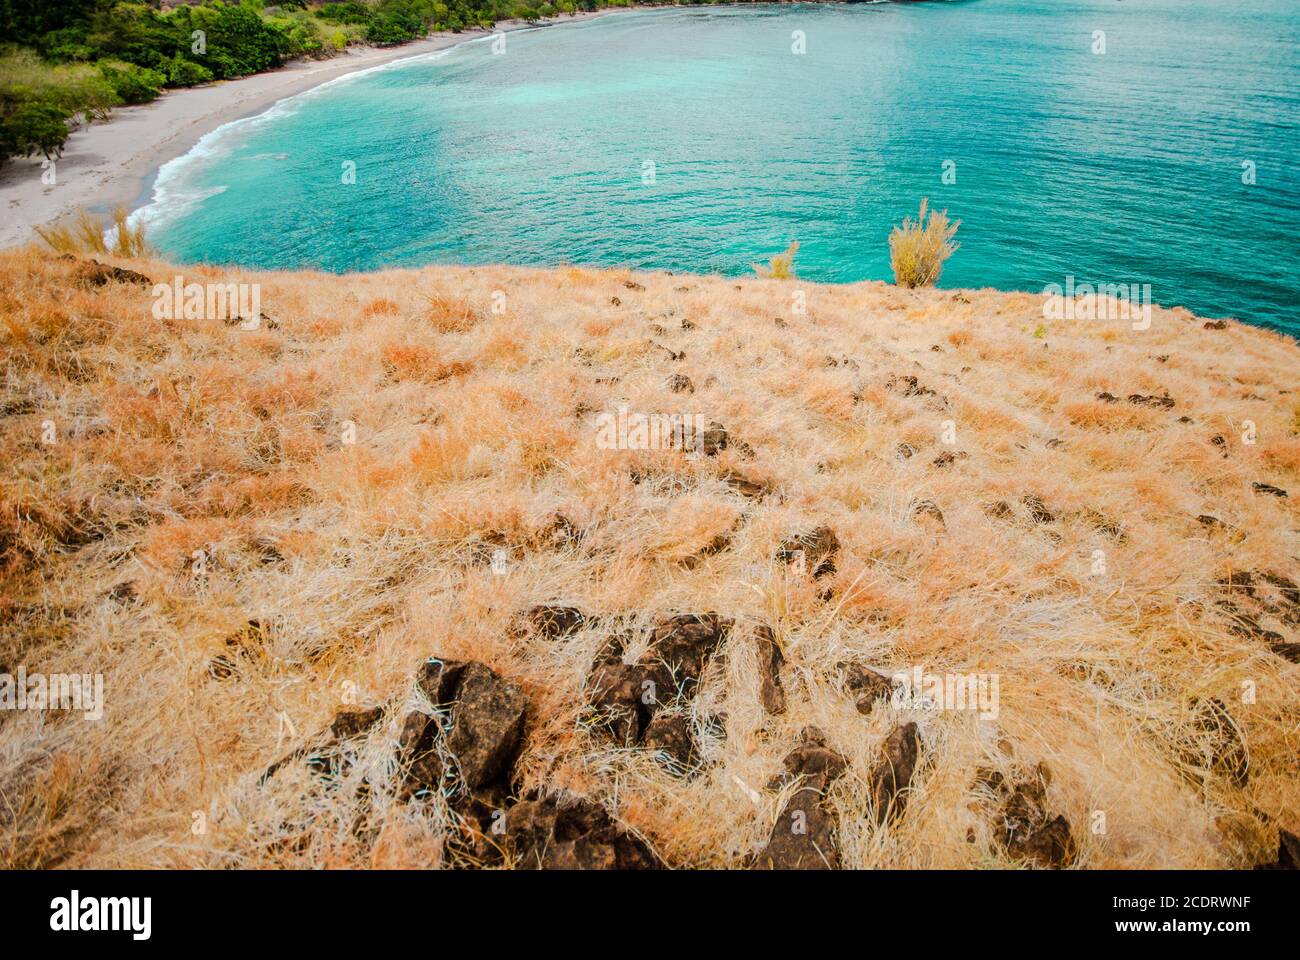 Scenic view of Anawangin Cove, Zambales, Philippines. Stock Photo